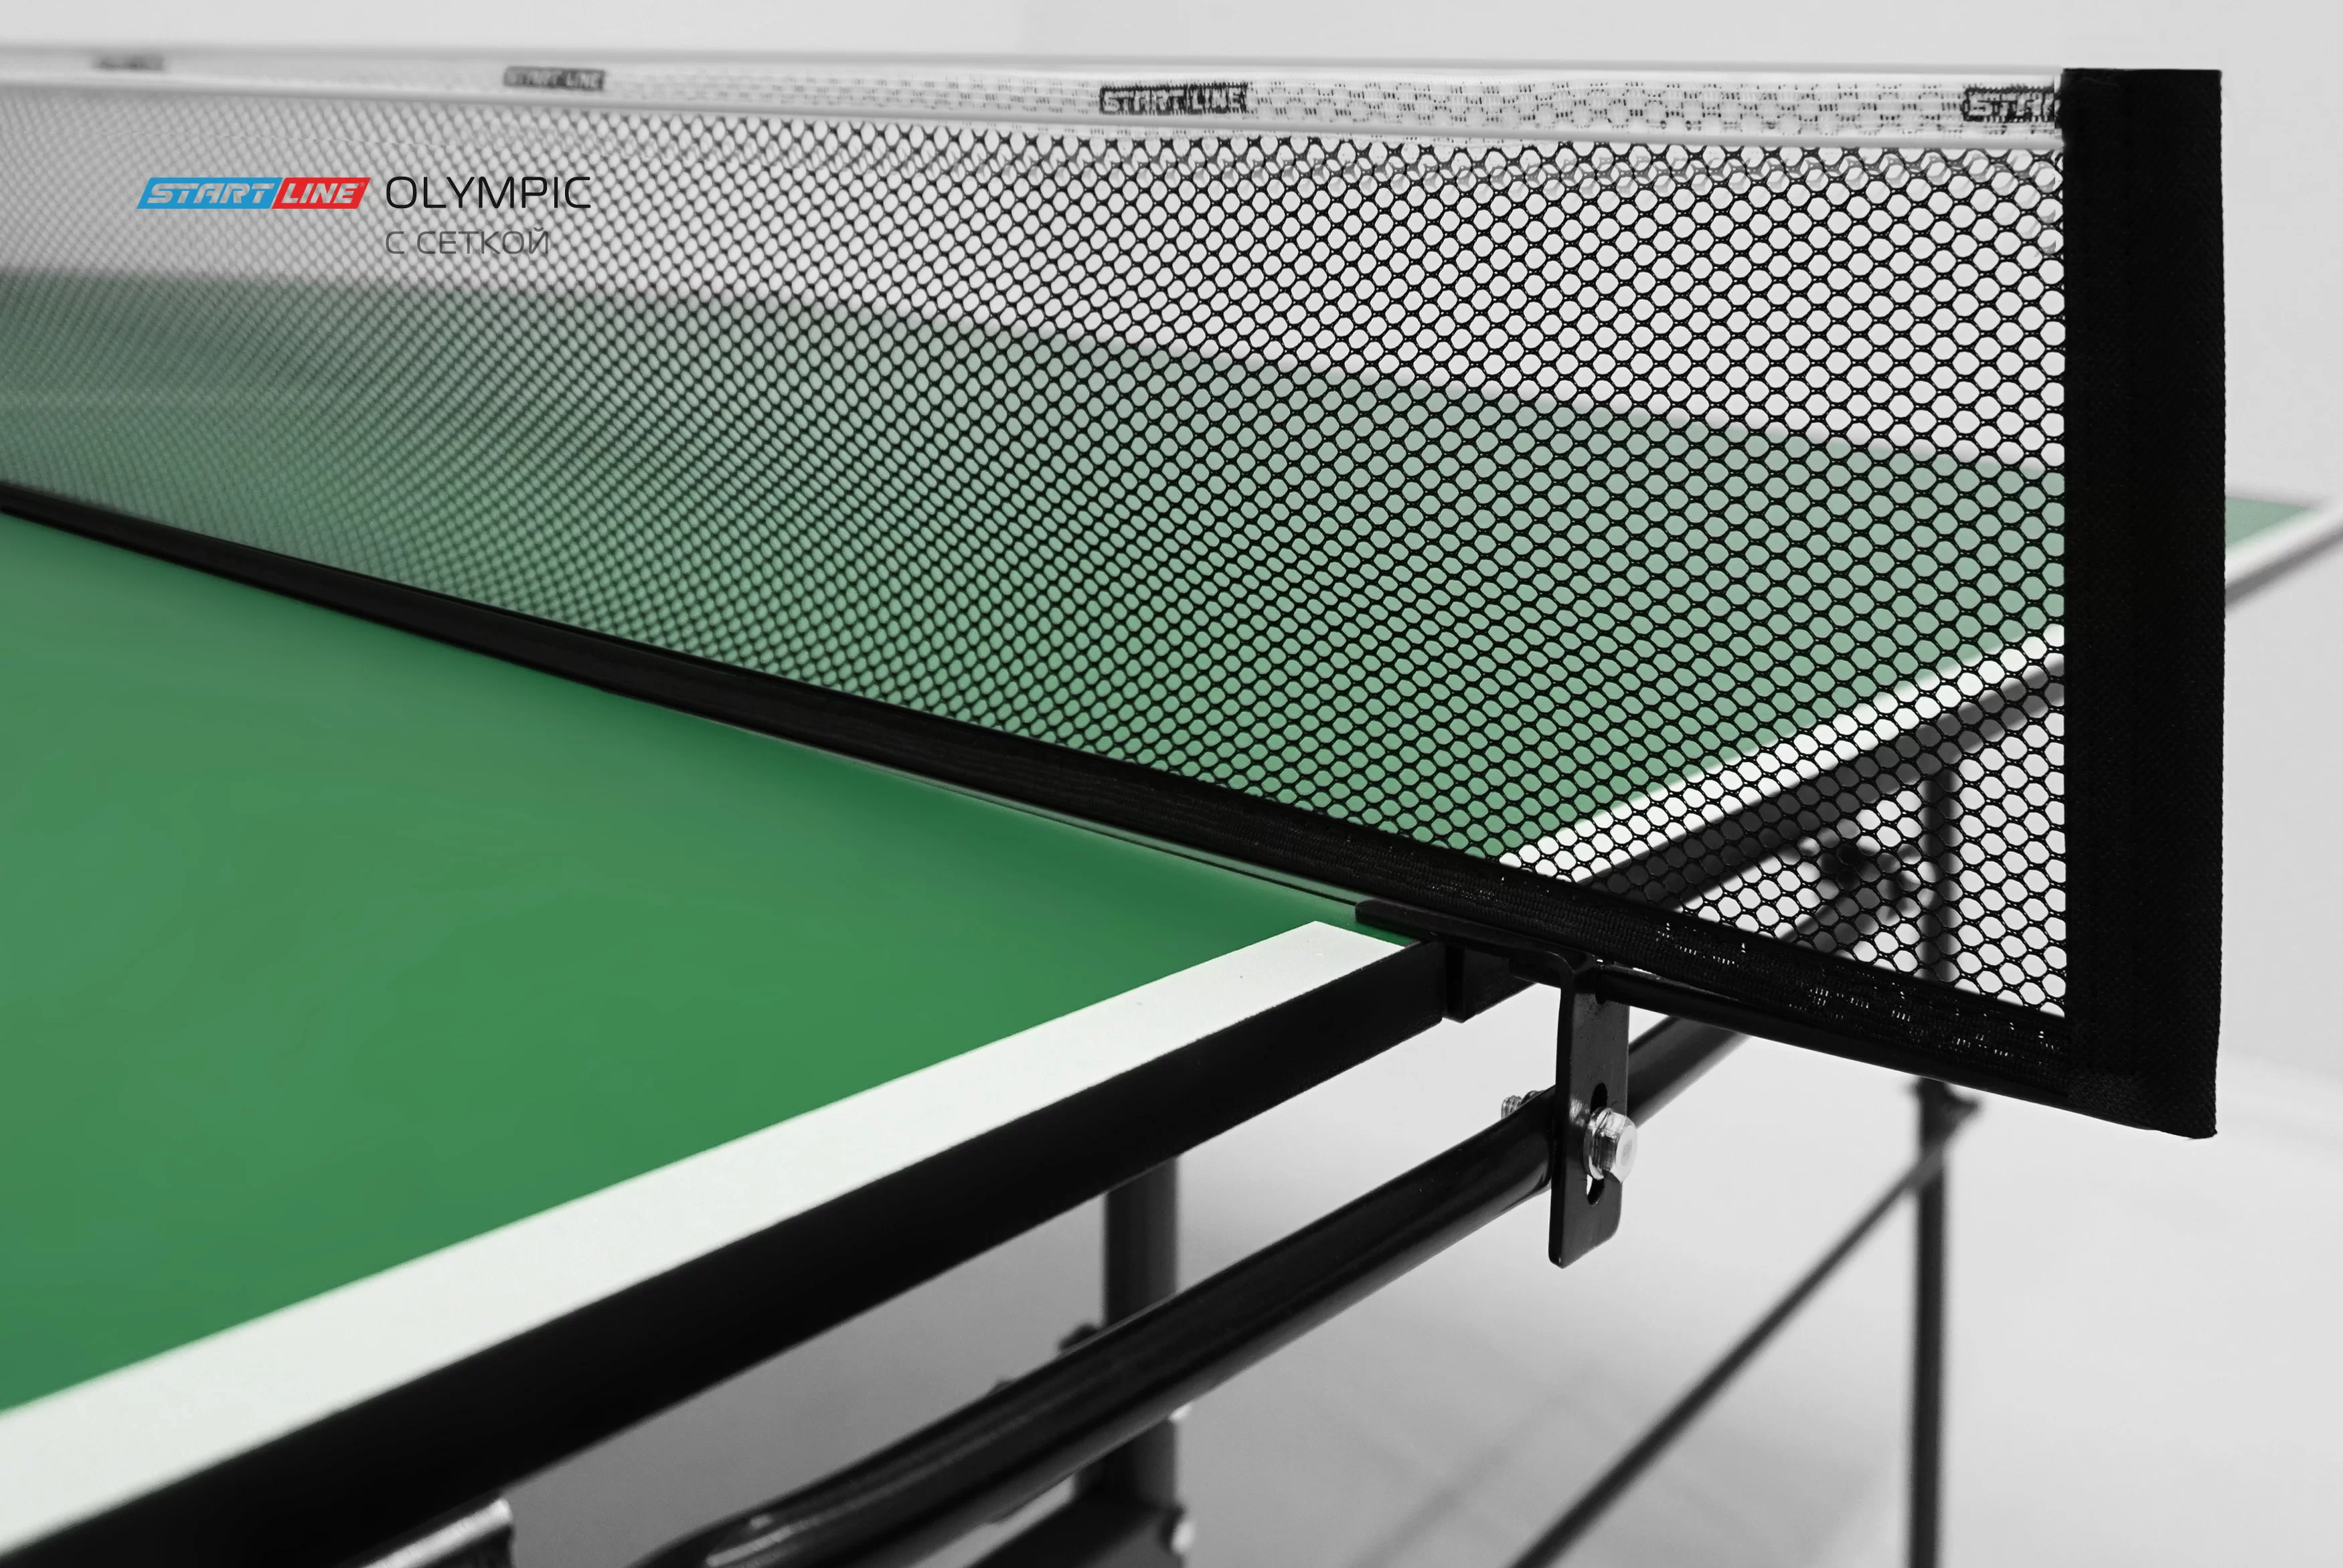 Реальное фото Теннисный стол Start Line Olympic с сеткой с комплектом 6021-1 от магазина СпортЕВ